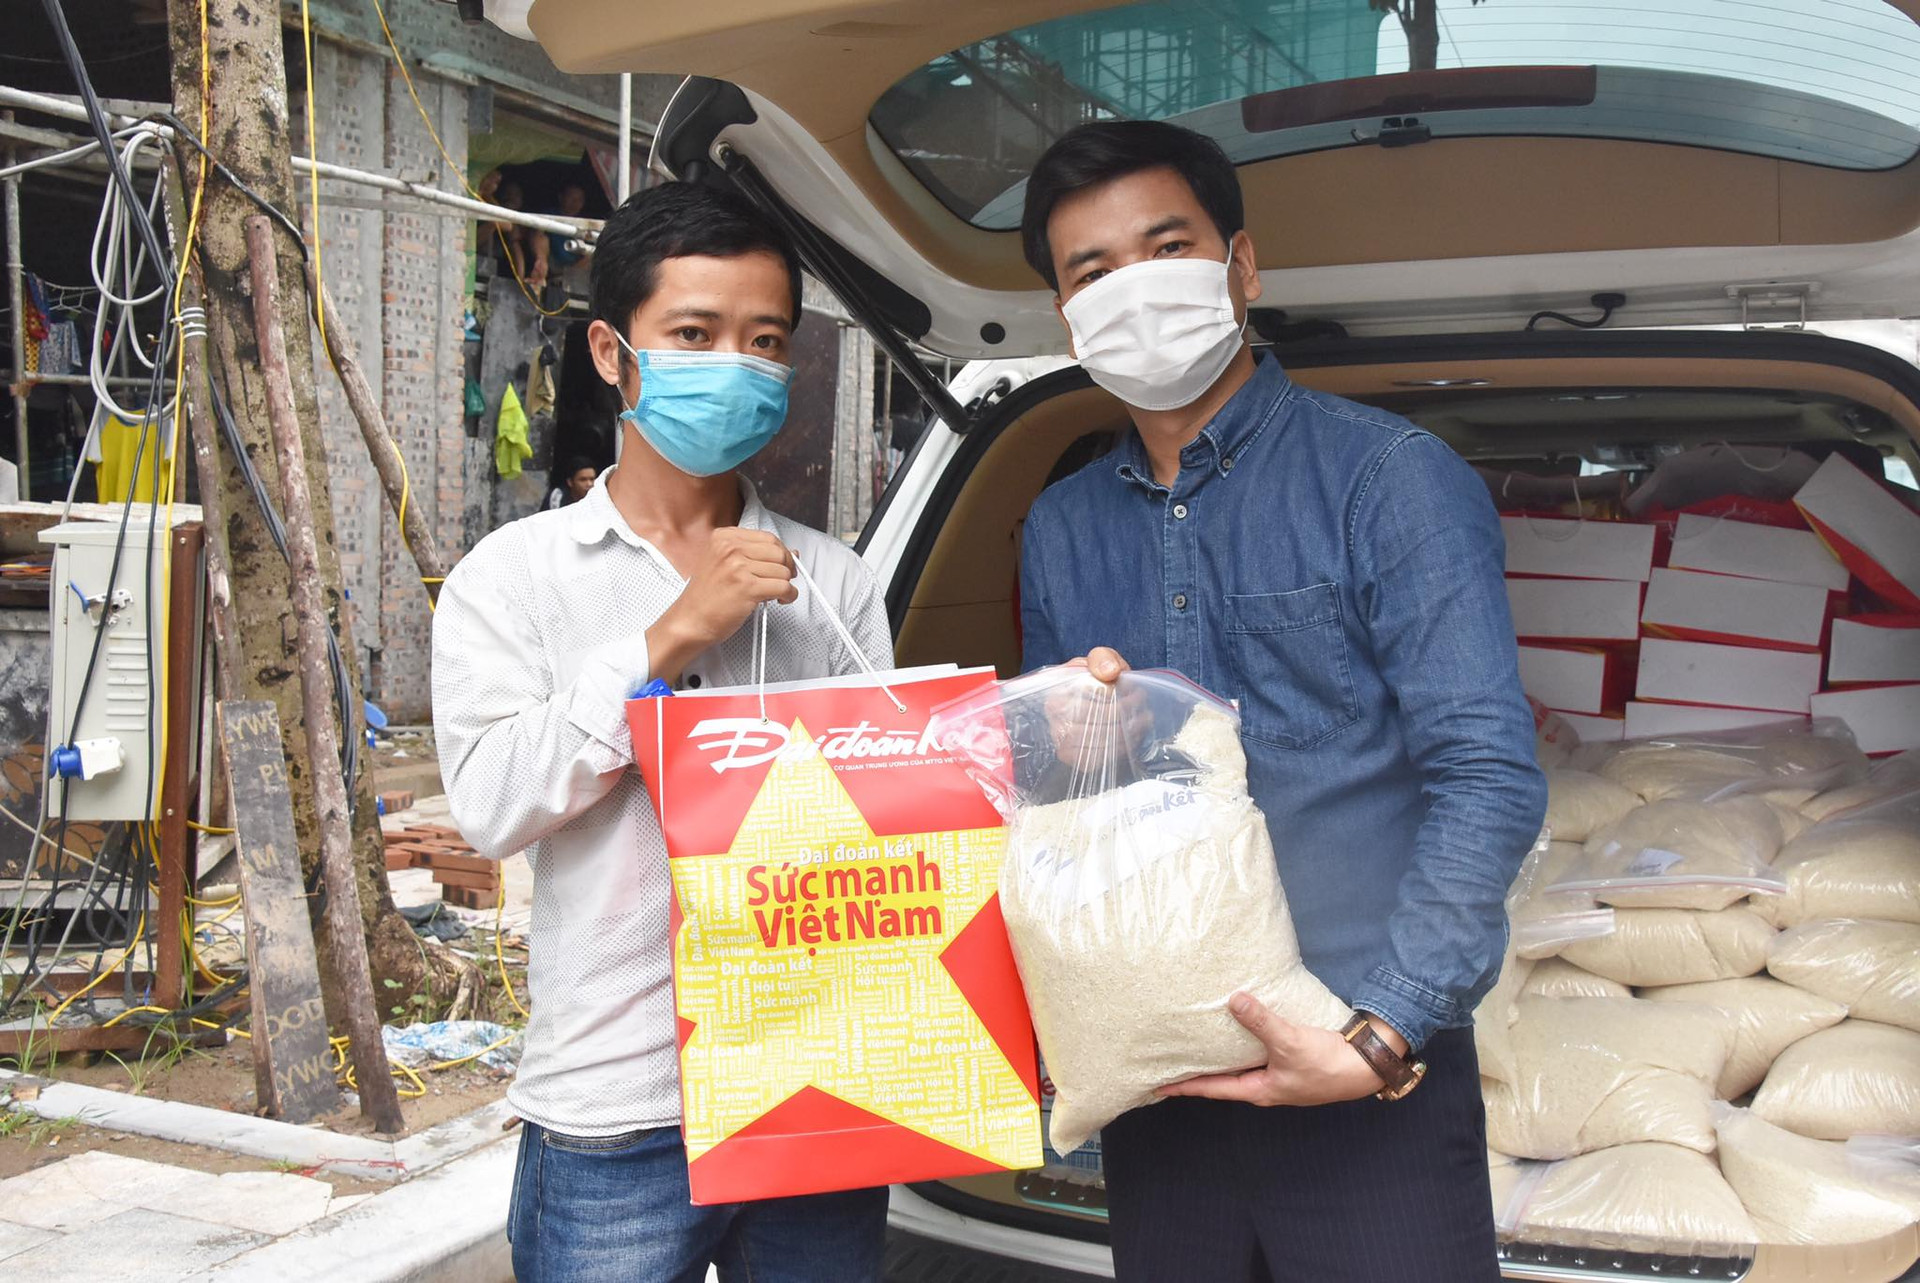 Đoàn trao tặng túi quà an sinh đến công nhân đang mắc kẹt tại các công trường xây dựng trên địa bàn phường Thịnh Liệt, quận Hoàng Mai. Ảnh: Tiến Đạt.